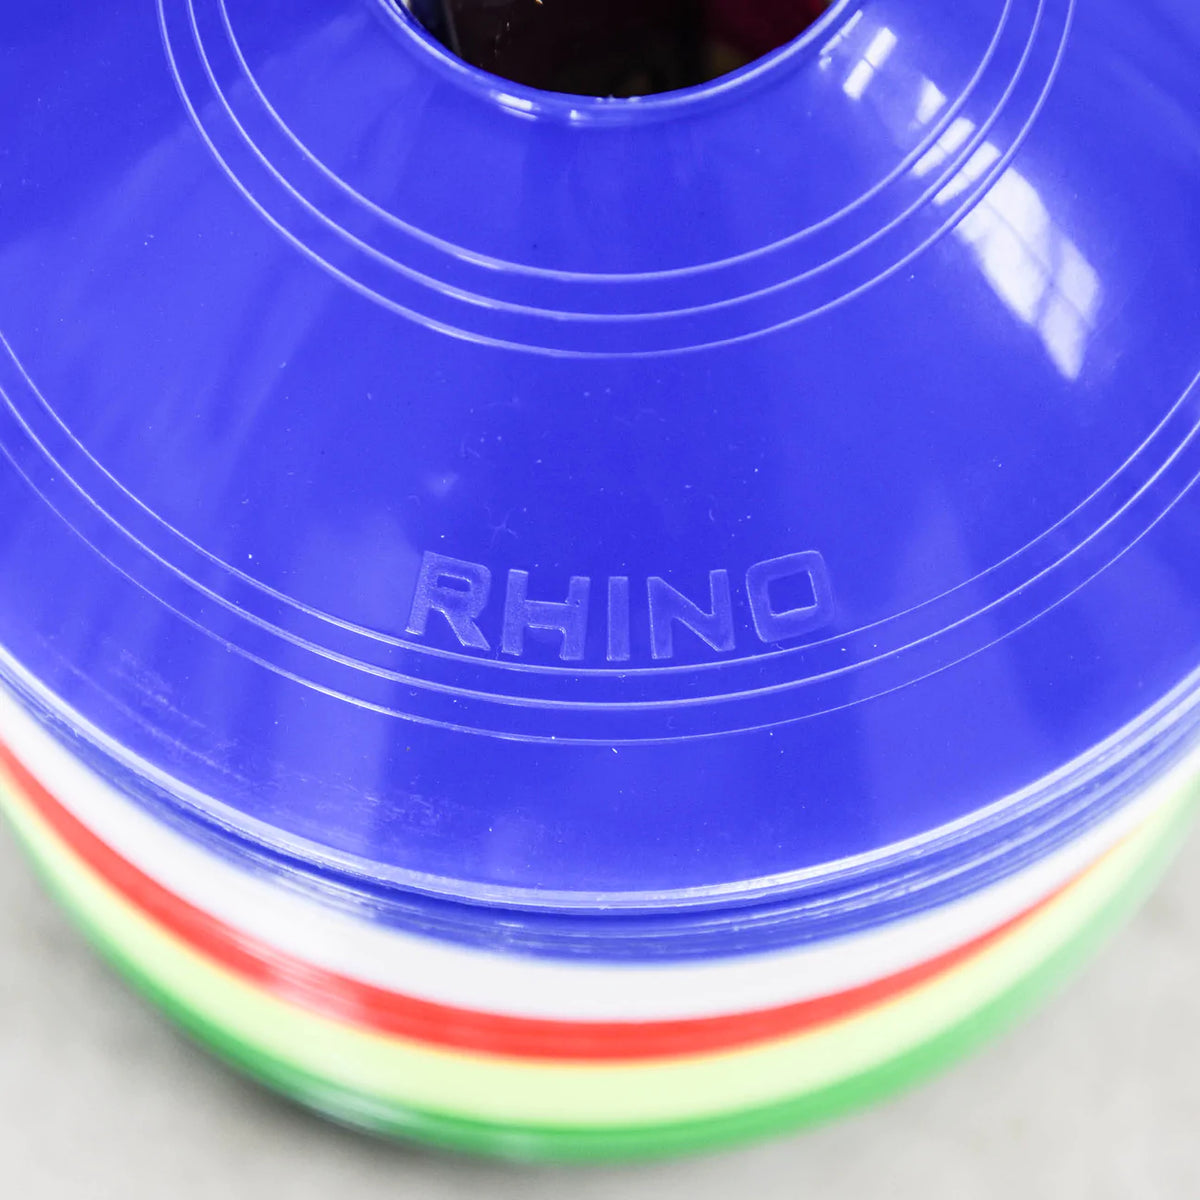 Rhino 网格标记盘